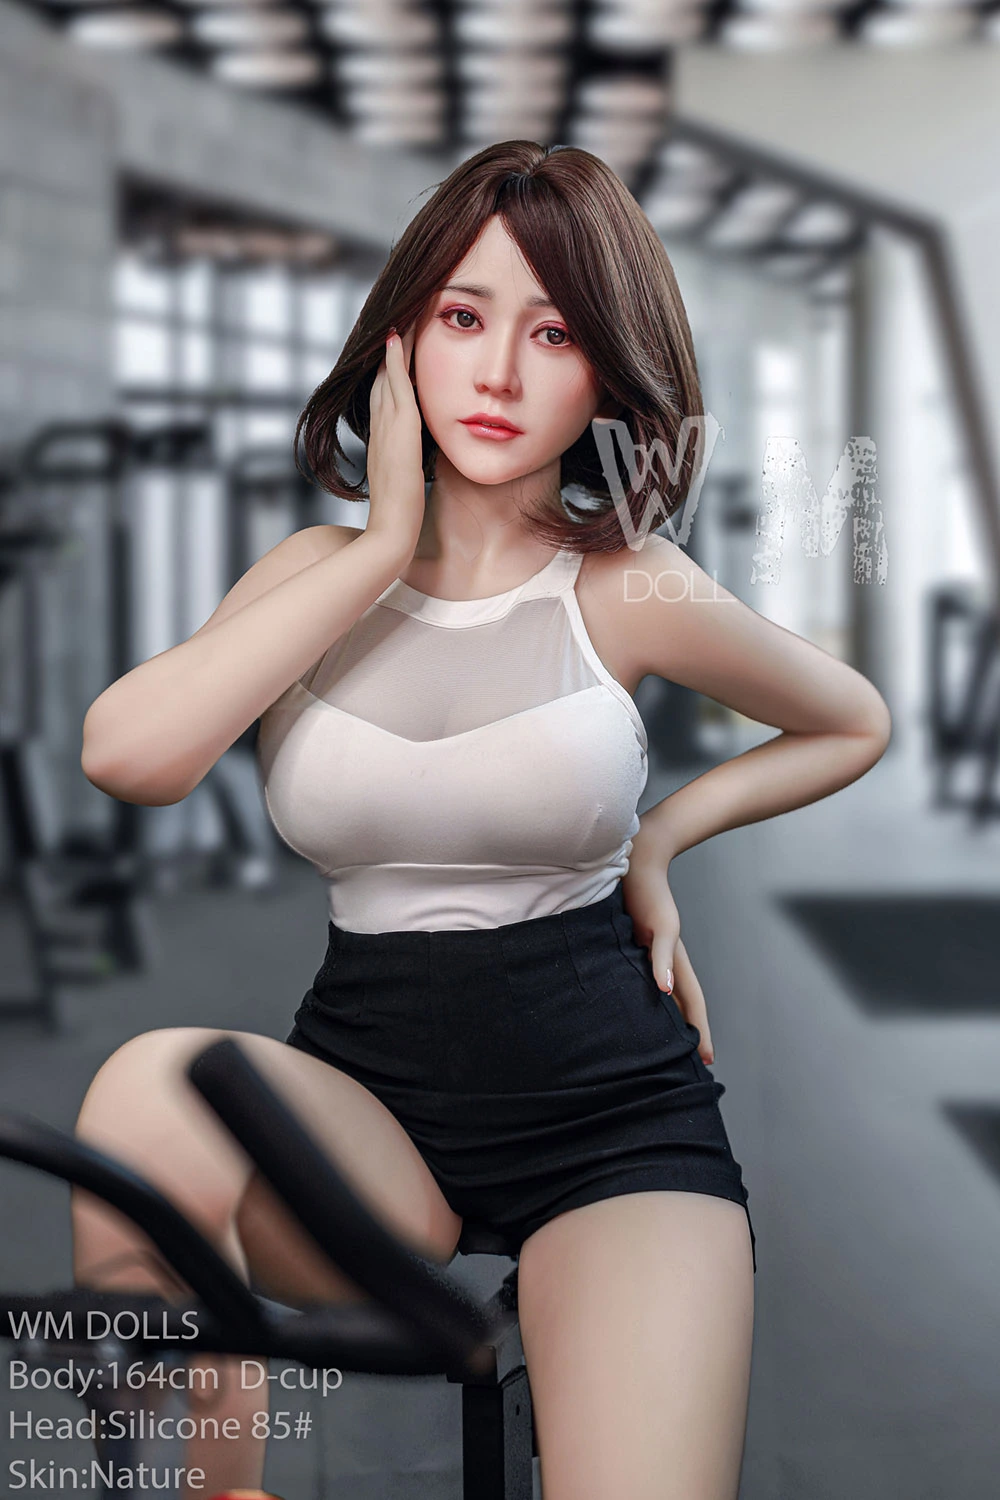 Gym sex doll